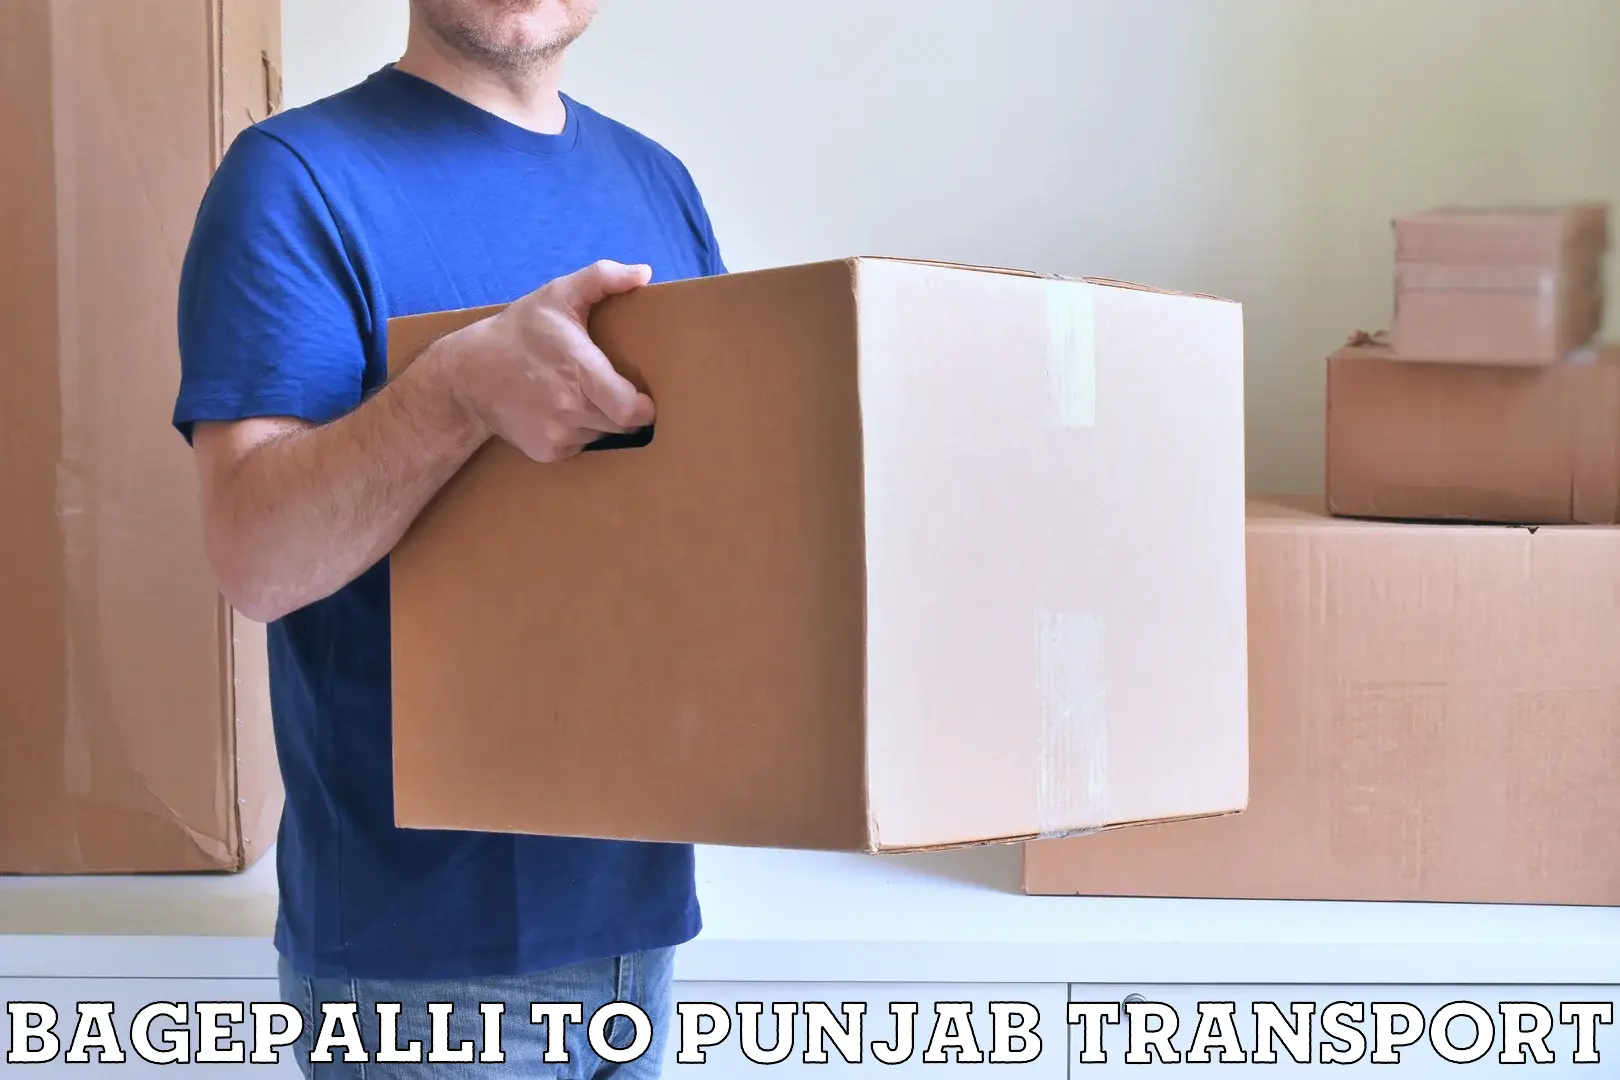 Commercial transport service Bagepalli to Jalandhar